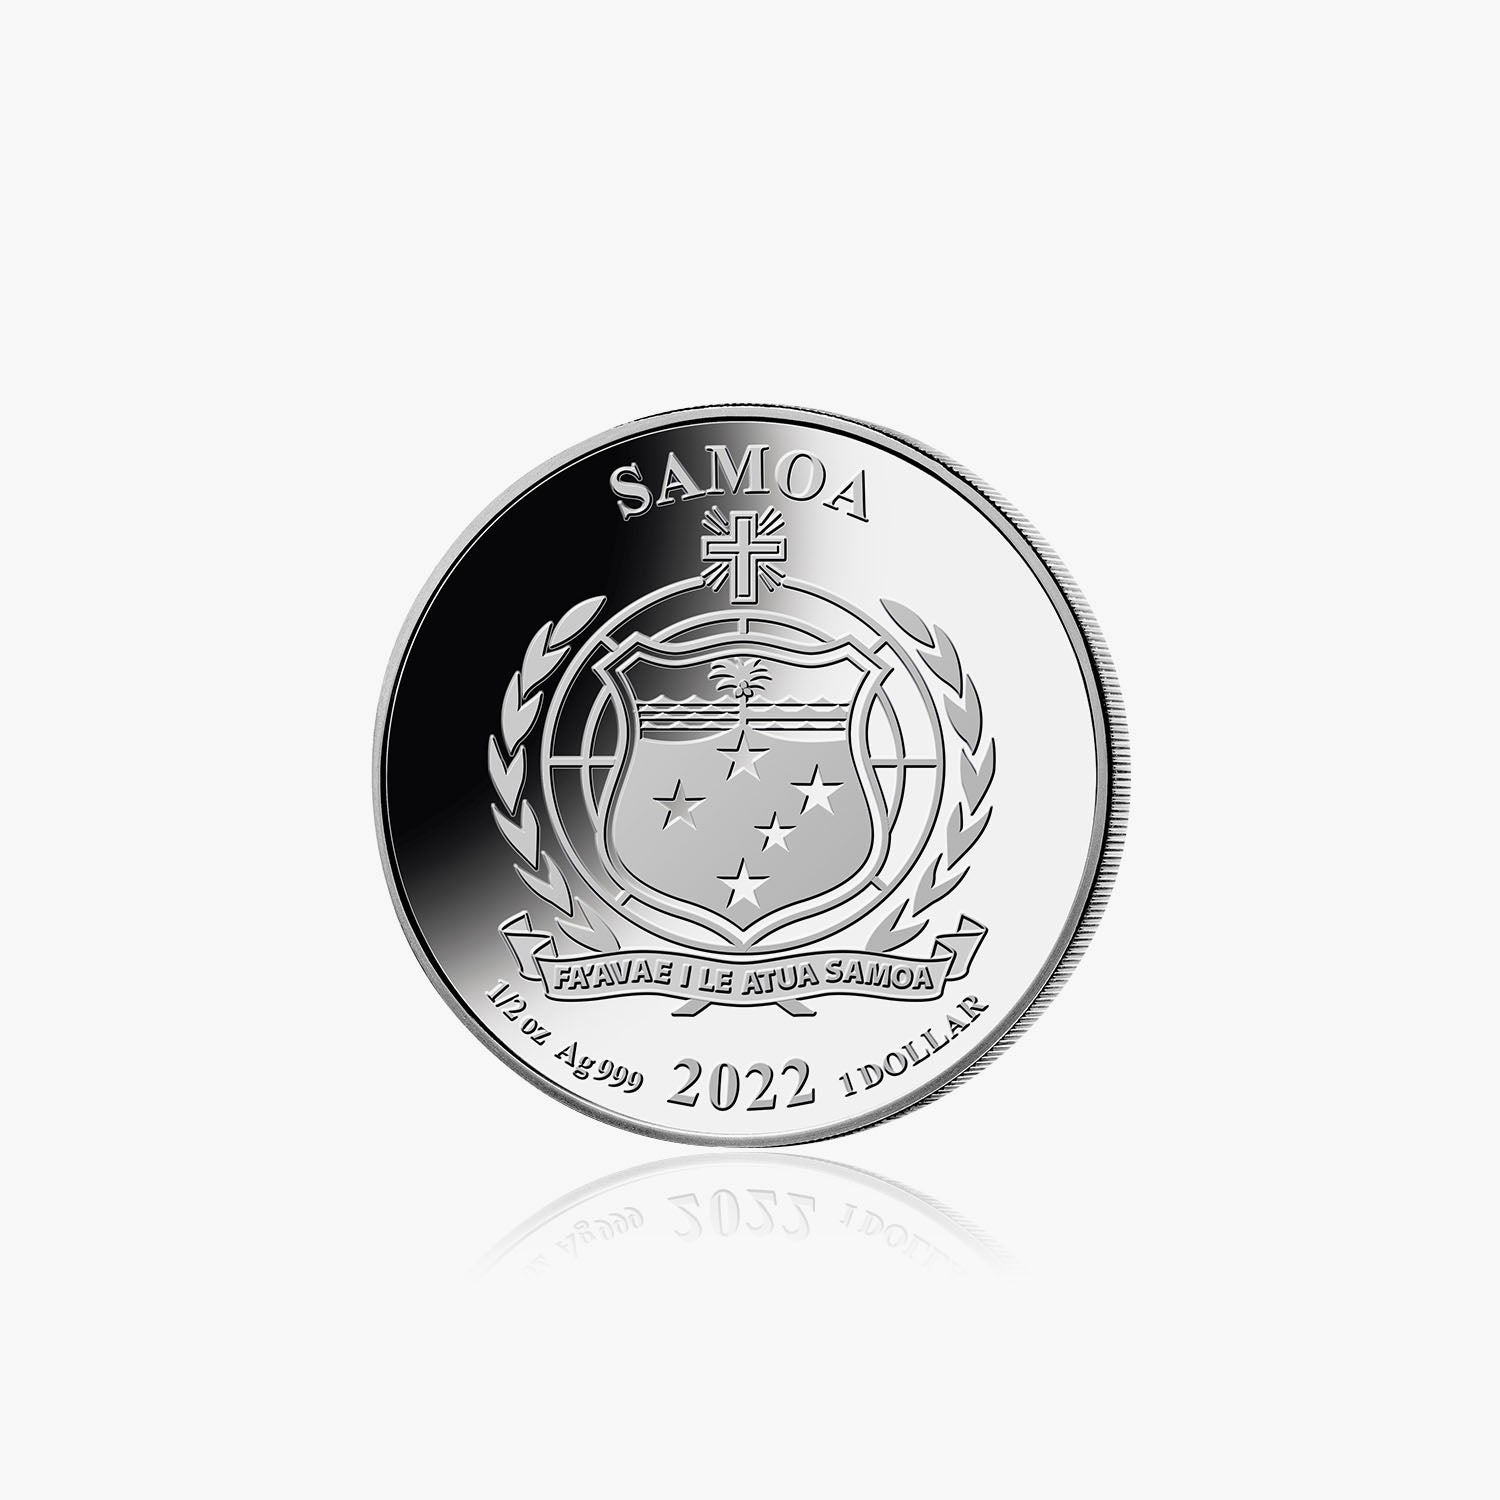 Justice League - Shazam 1/2oz Silver Coin